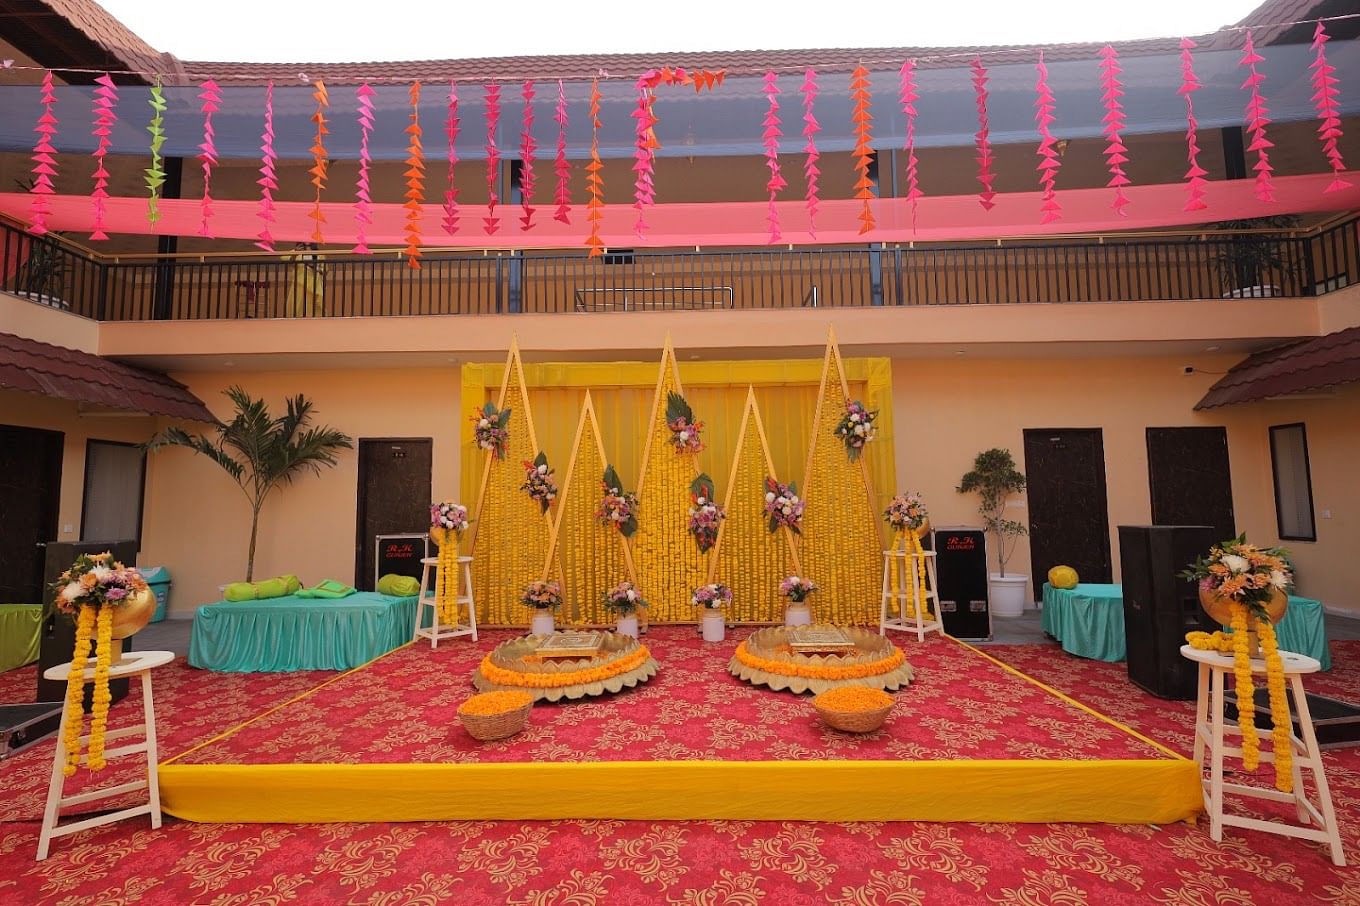 Varmala Resort Banquet in Jagatpura, Jaipur